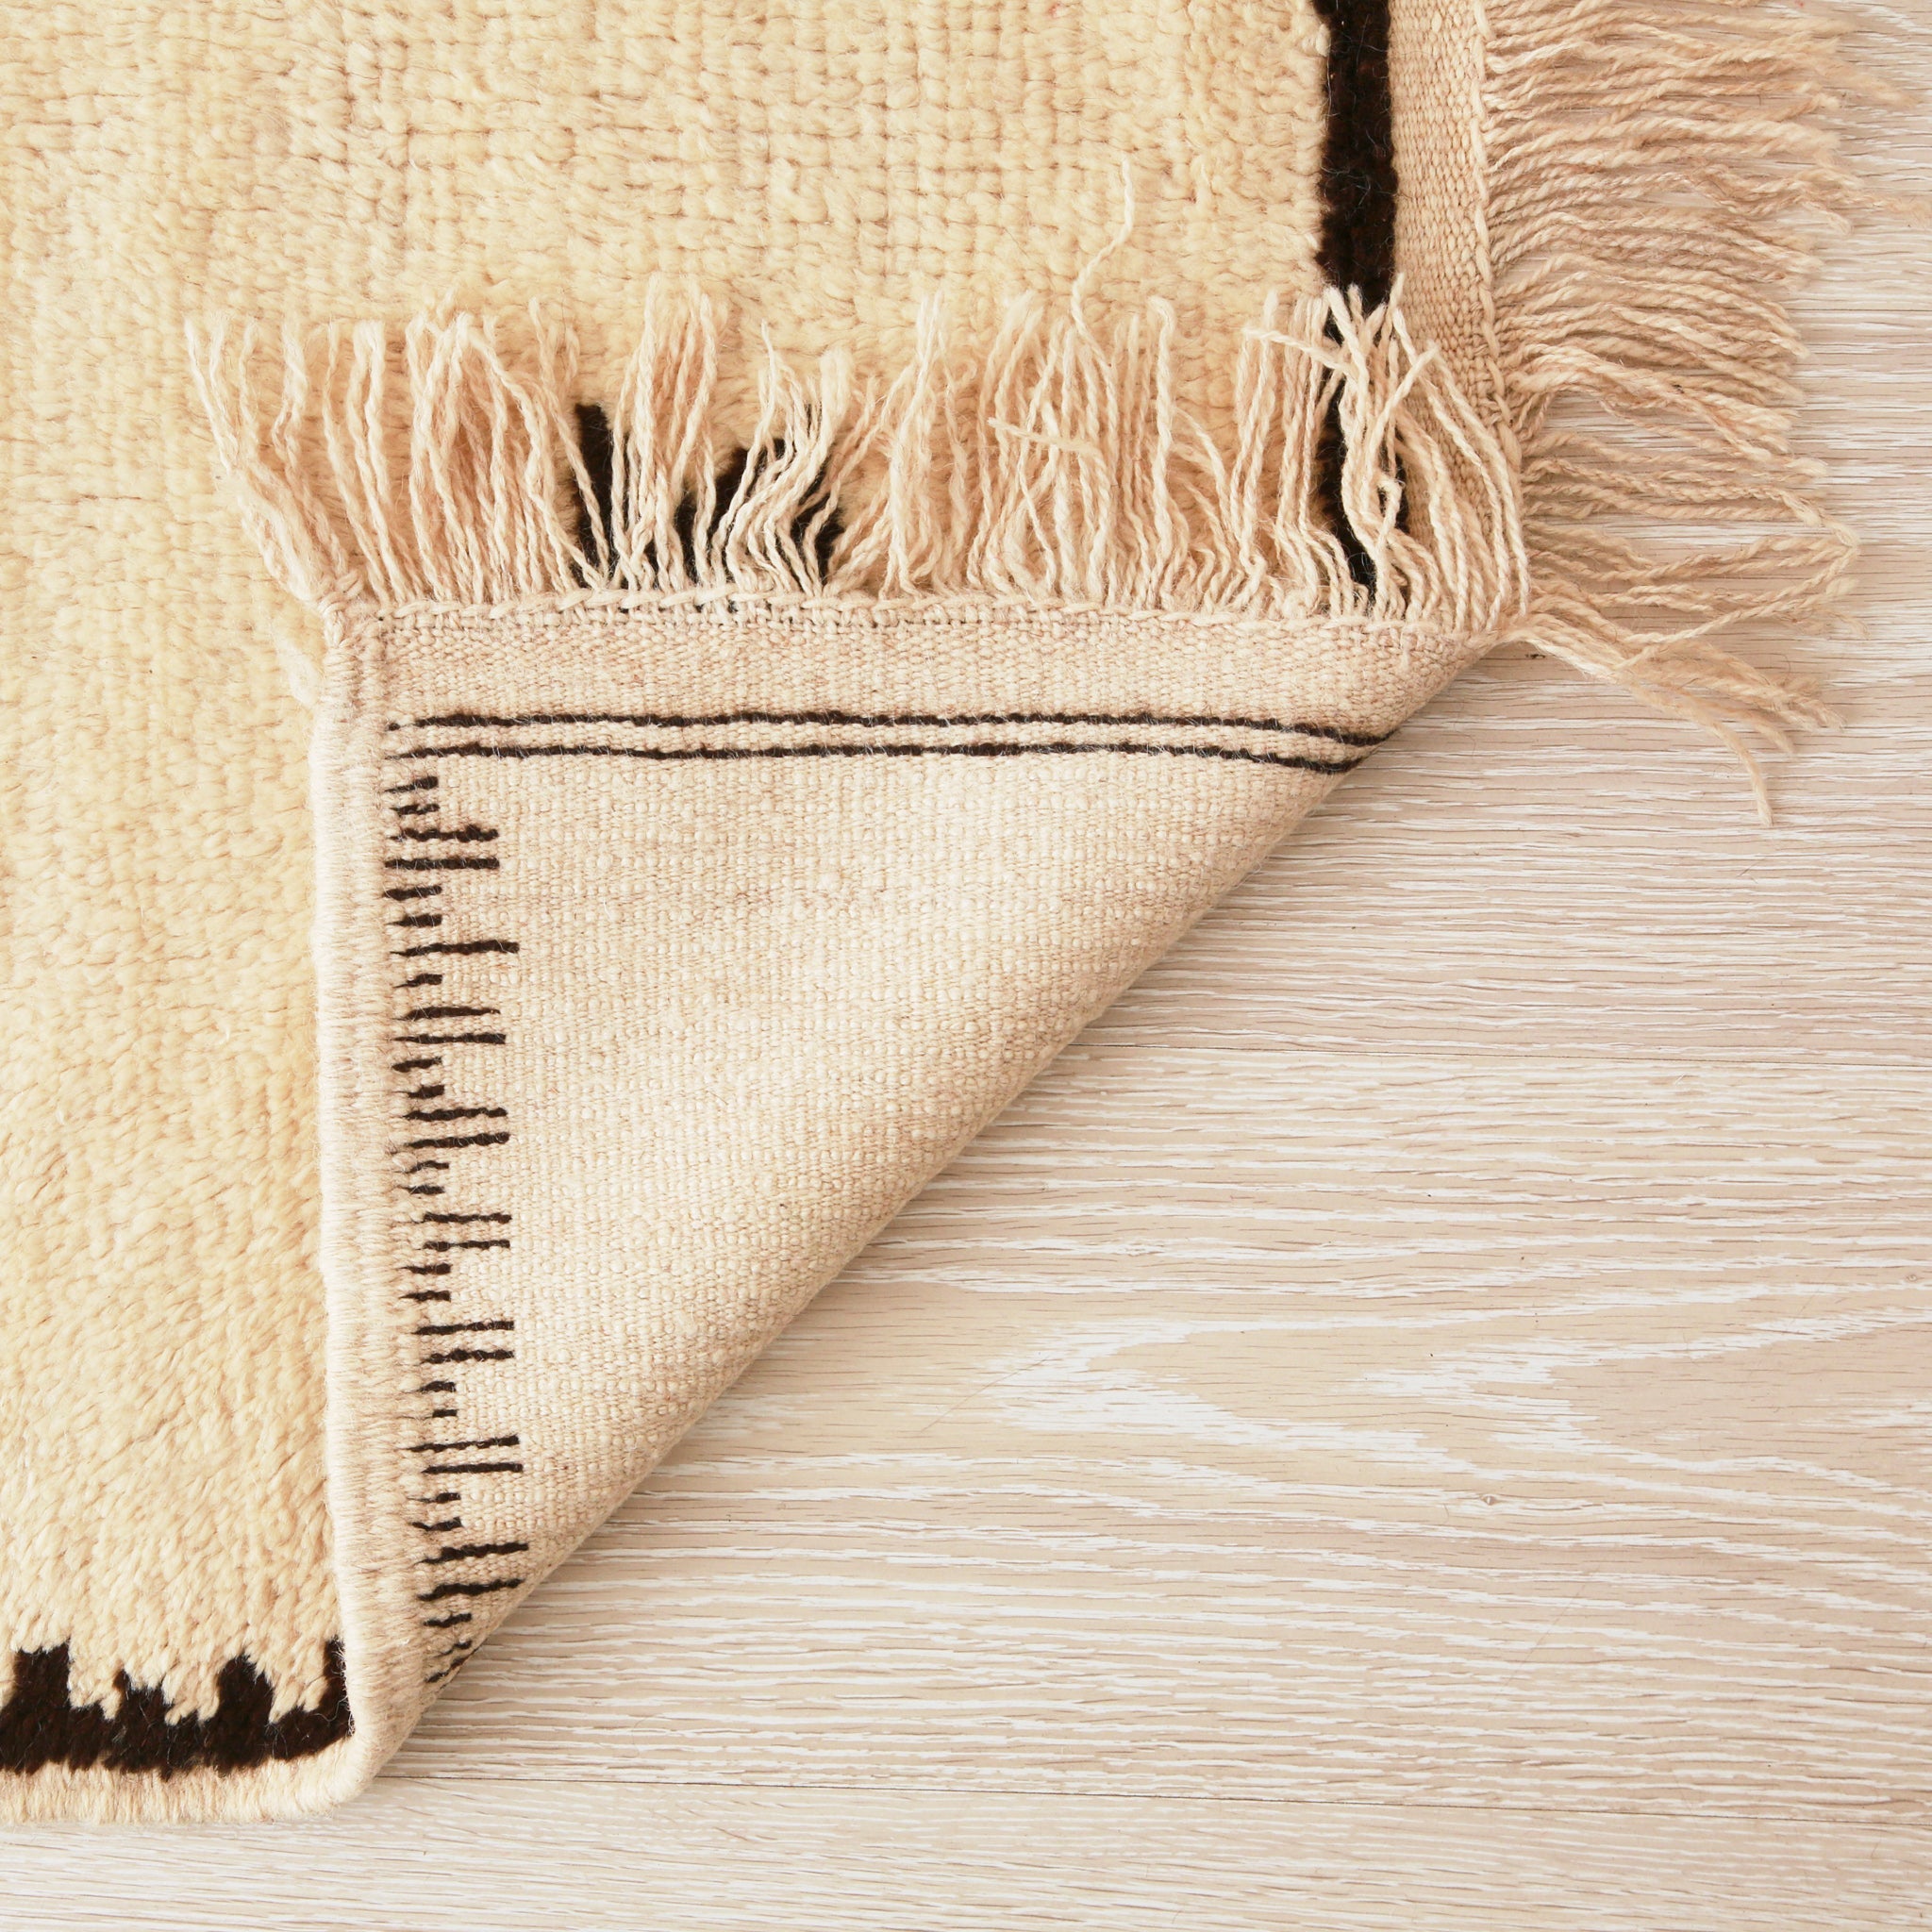 retro dell'angolo di un tappeto che mostra la precisione e la vicinanza dei nodi, nonché la cura dei dettagli